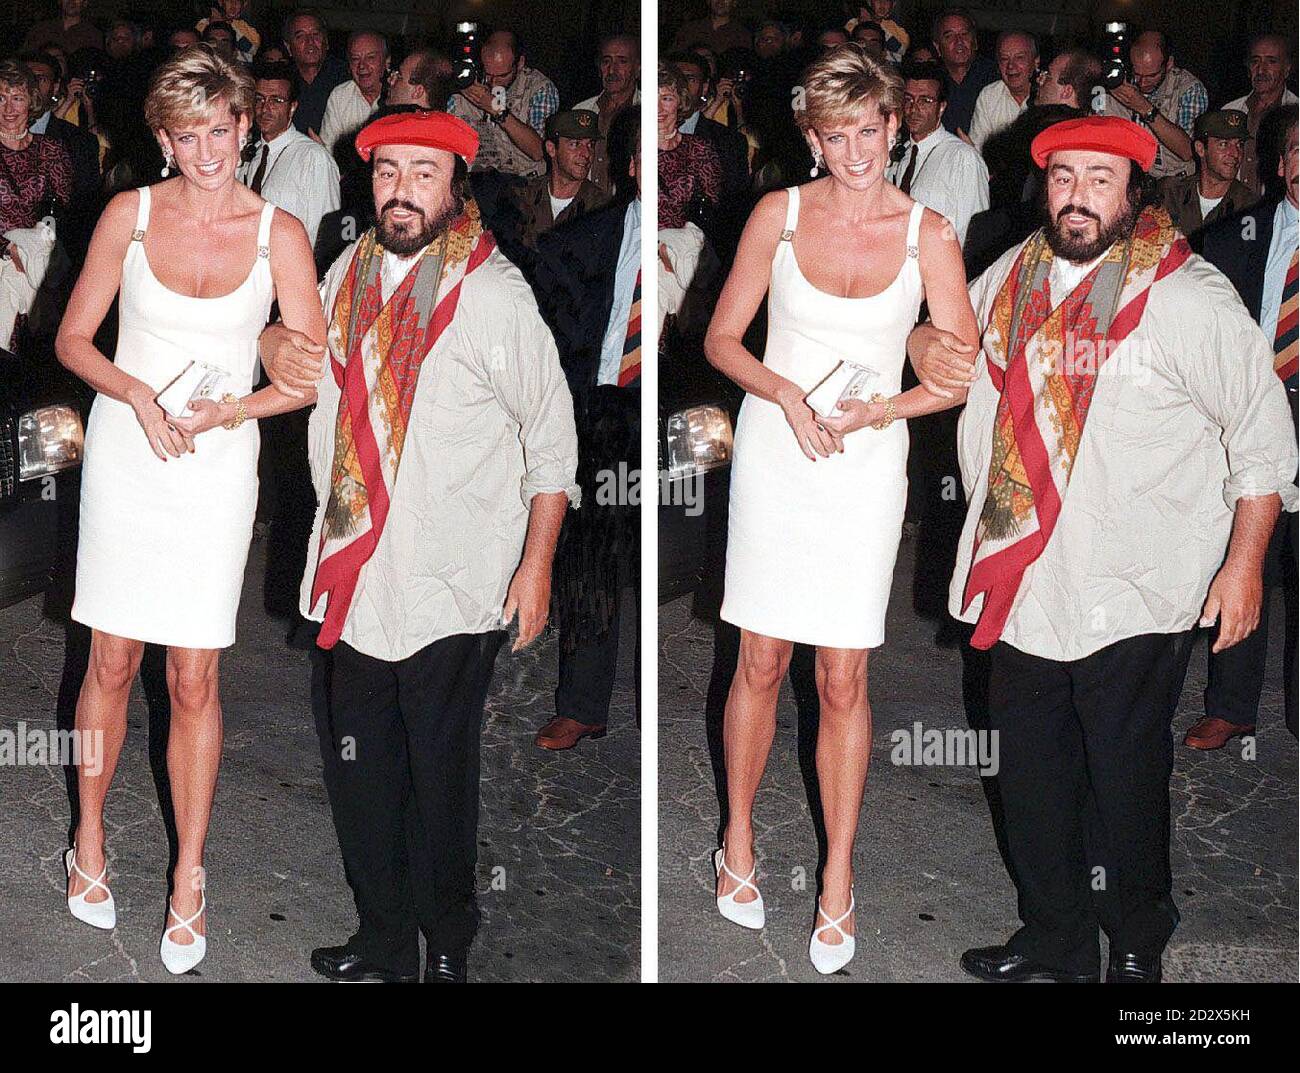 PAF: Der italienische Opernstar Luciano Pavarotti hat den Befehl bekommen, das Gewicht zu verlieren. Dieses Komposit zeigt den Schwergewichtstenor mit der Prinzessin von Wales und ein digital manipuliertes Bild mit einer schlanken Pavarotti. Siehe GESUNDHEIT Pavarotti Stockfoto